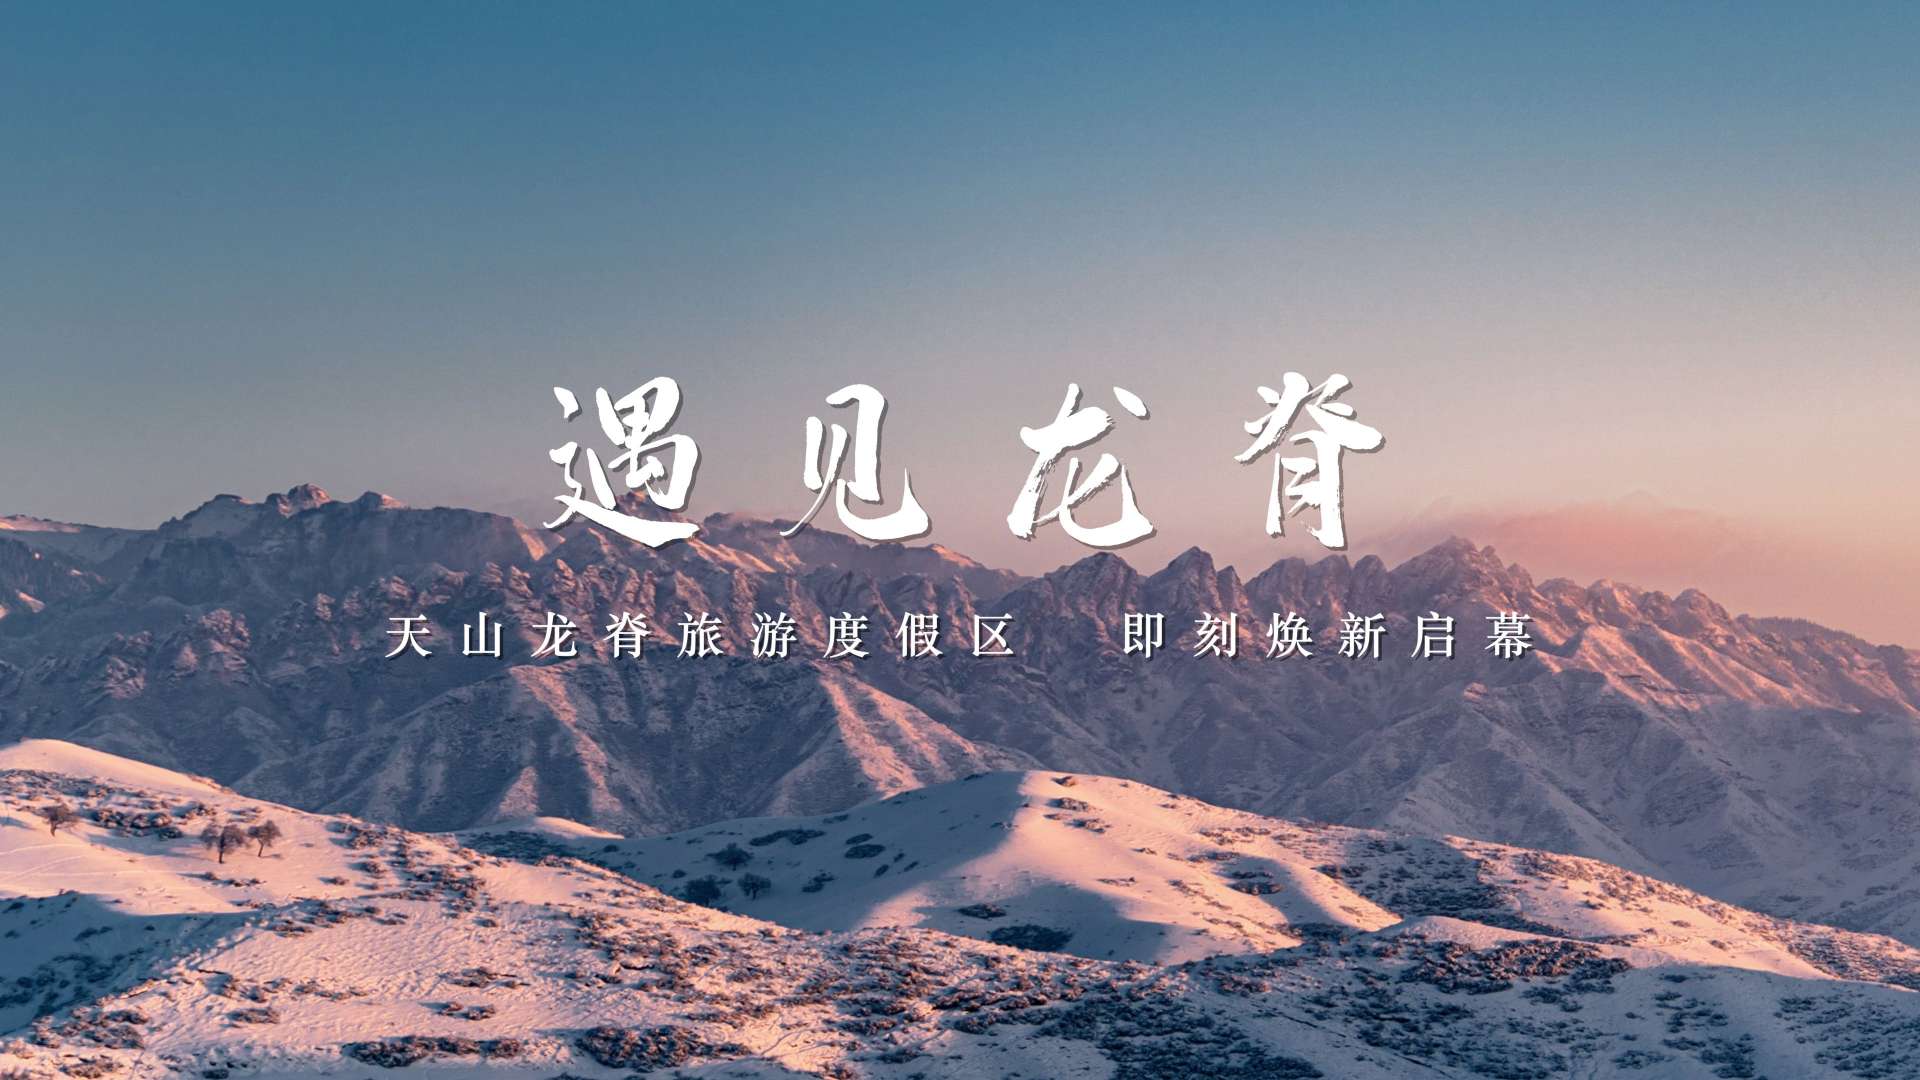 遇见龙脊 | 新疆天山龙脊国家级旅游度假区冬季宣传片